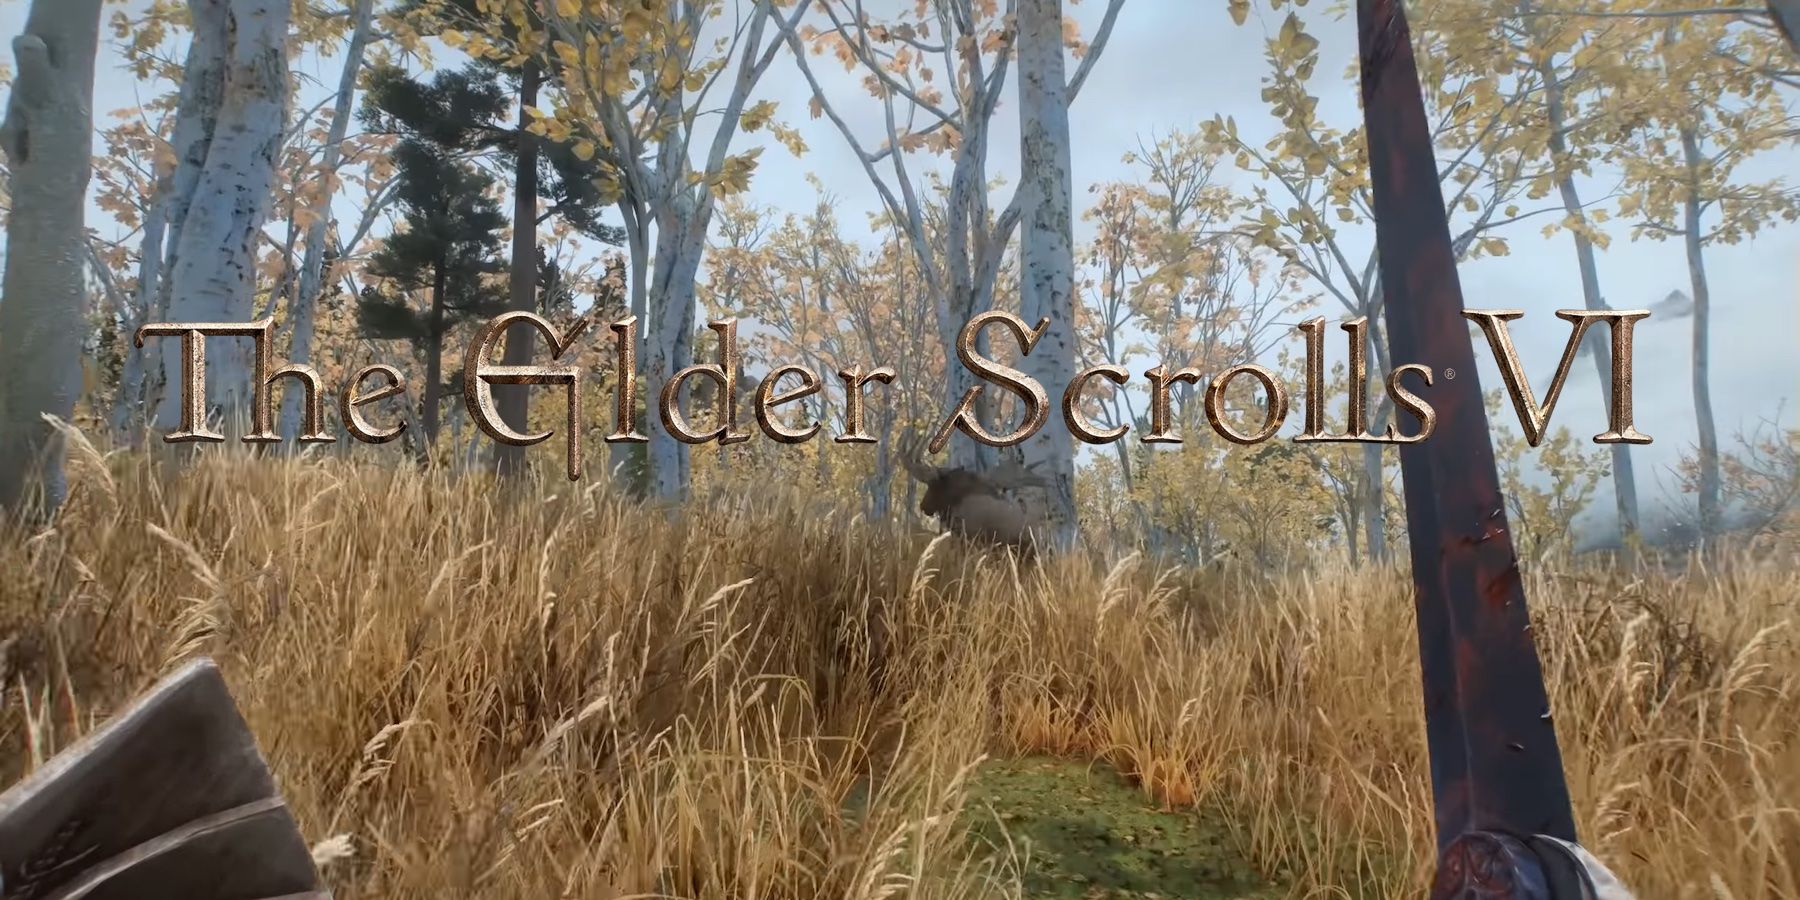 elder scrolls first person gameplay